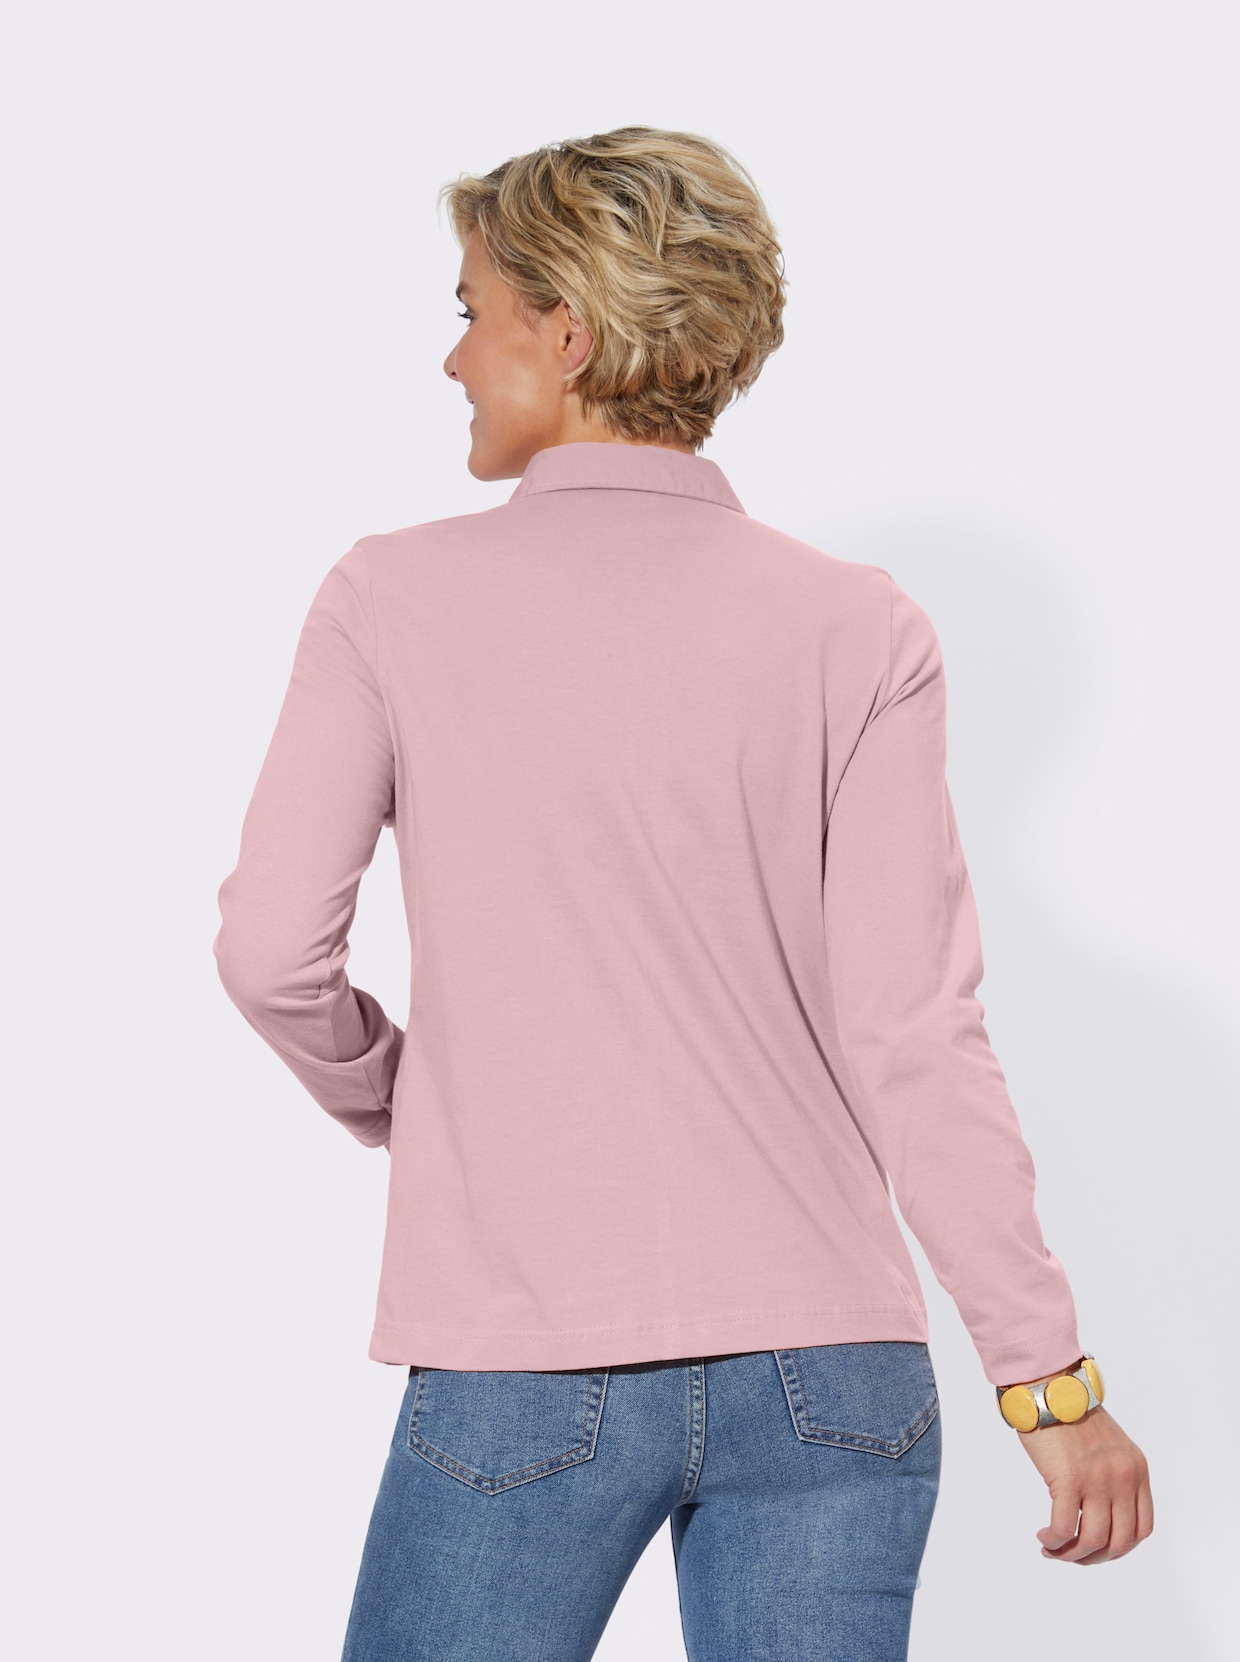 Langarm-Poloshirt - rosé